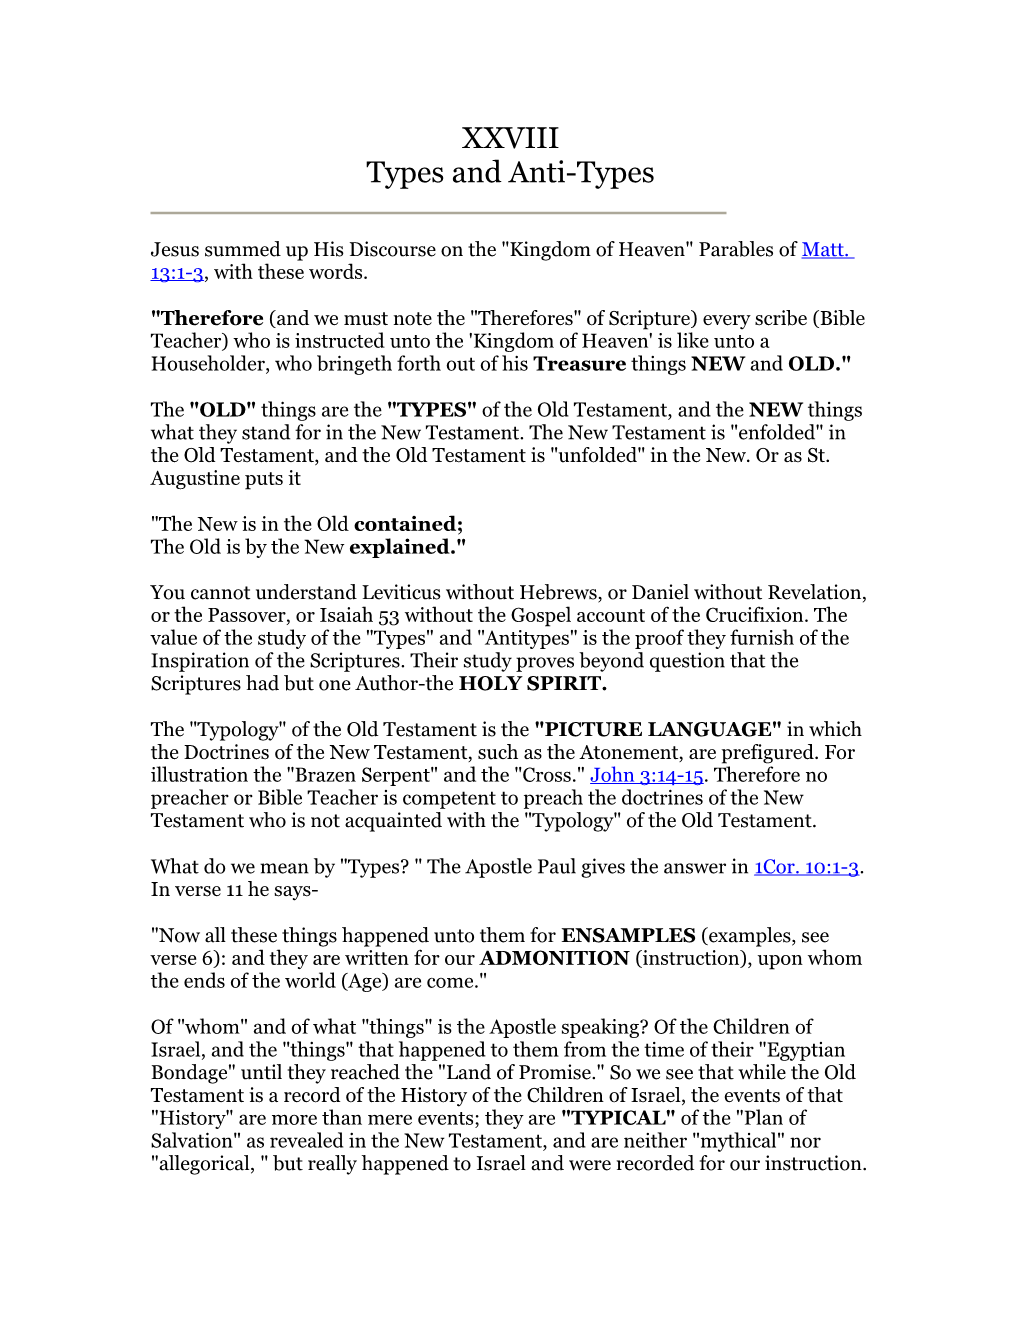 XXVIII Types and Anti-Types